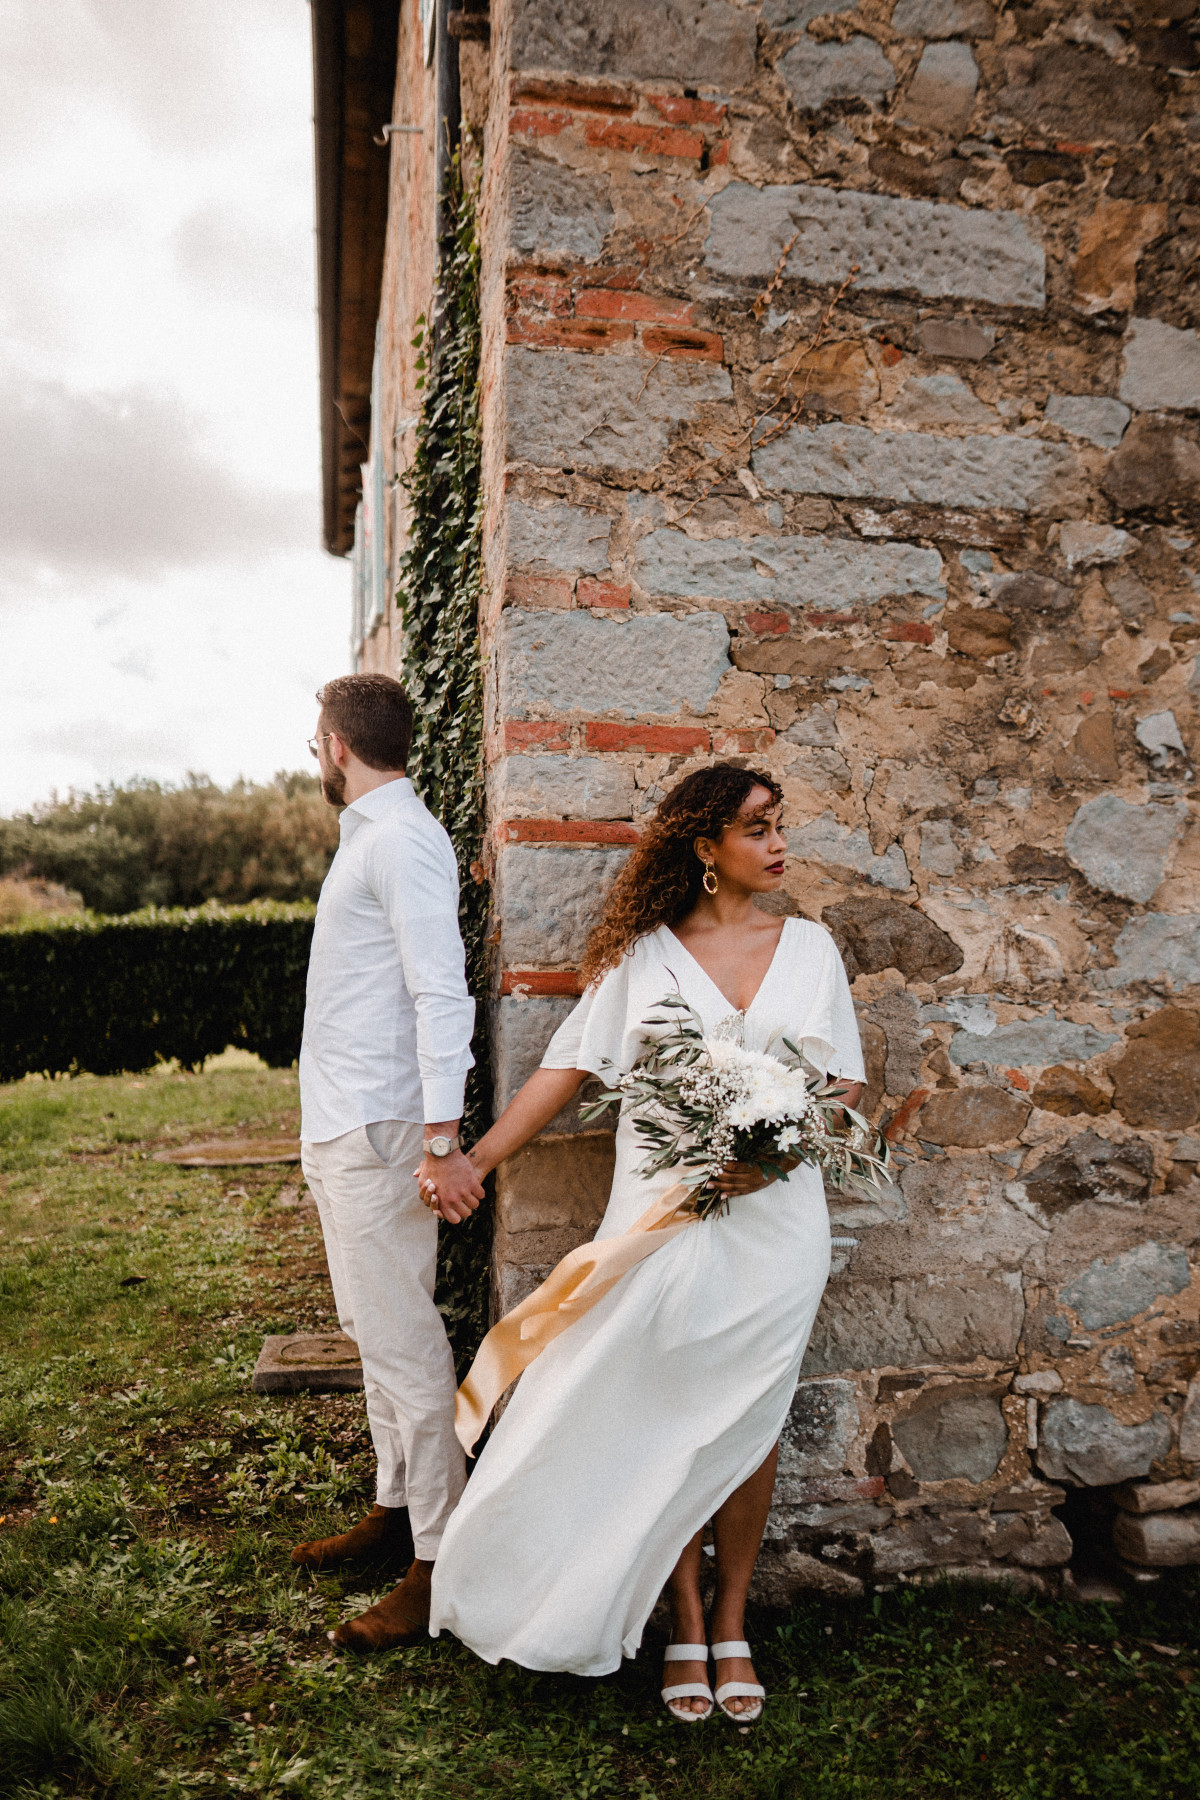 Aida + Tim | Hochzeitsfotografen am Bodensee Sarah & Rubén - Toskana Italien  - Hochzeitsfotografie von Aida und Tim